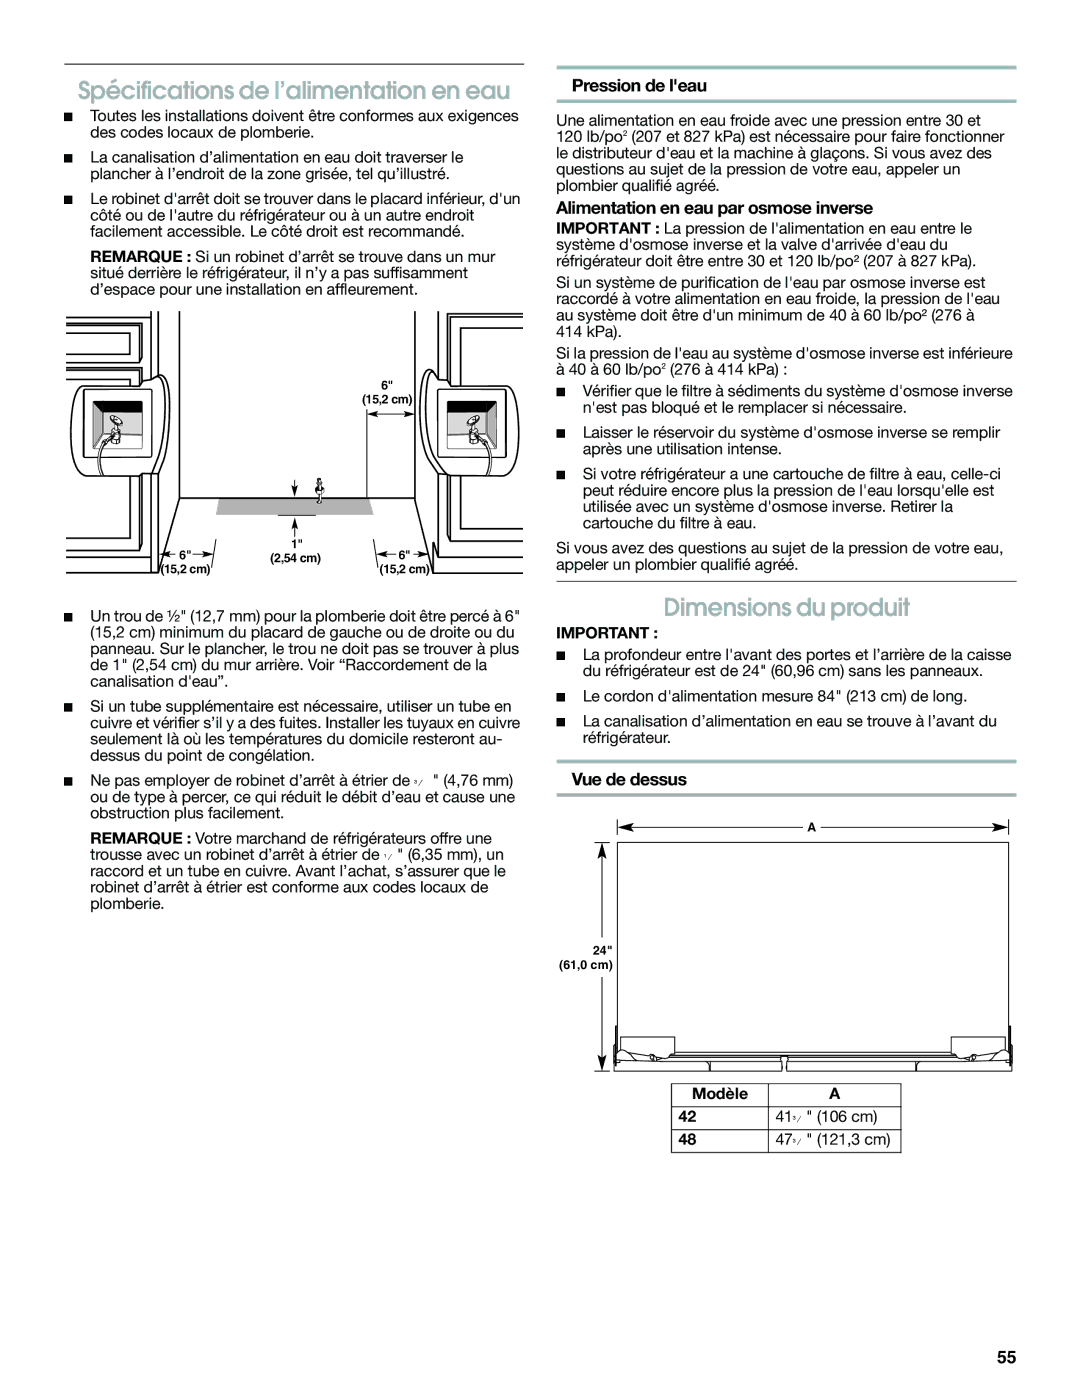 Jenn-Air W10379136A manual Spécifications de l’alimentation en eau, Dimensions du produit, Pression de leau, Vue de dessus 